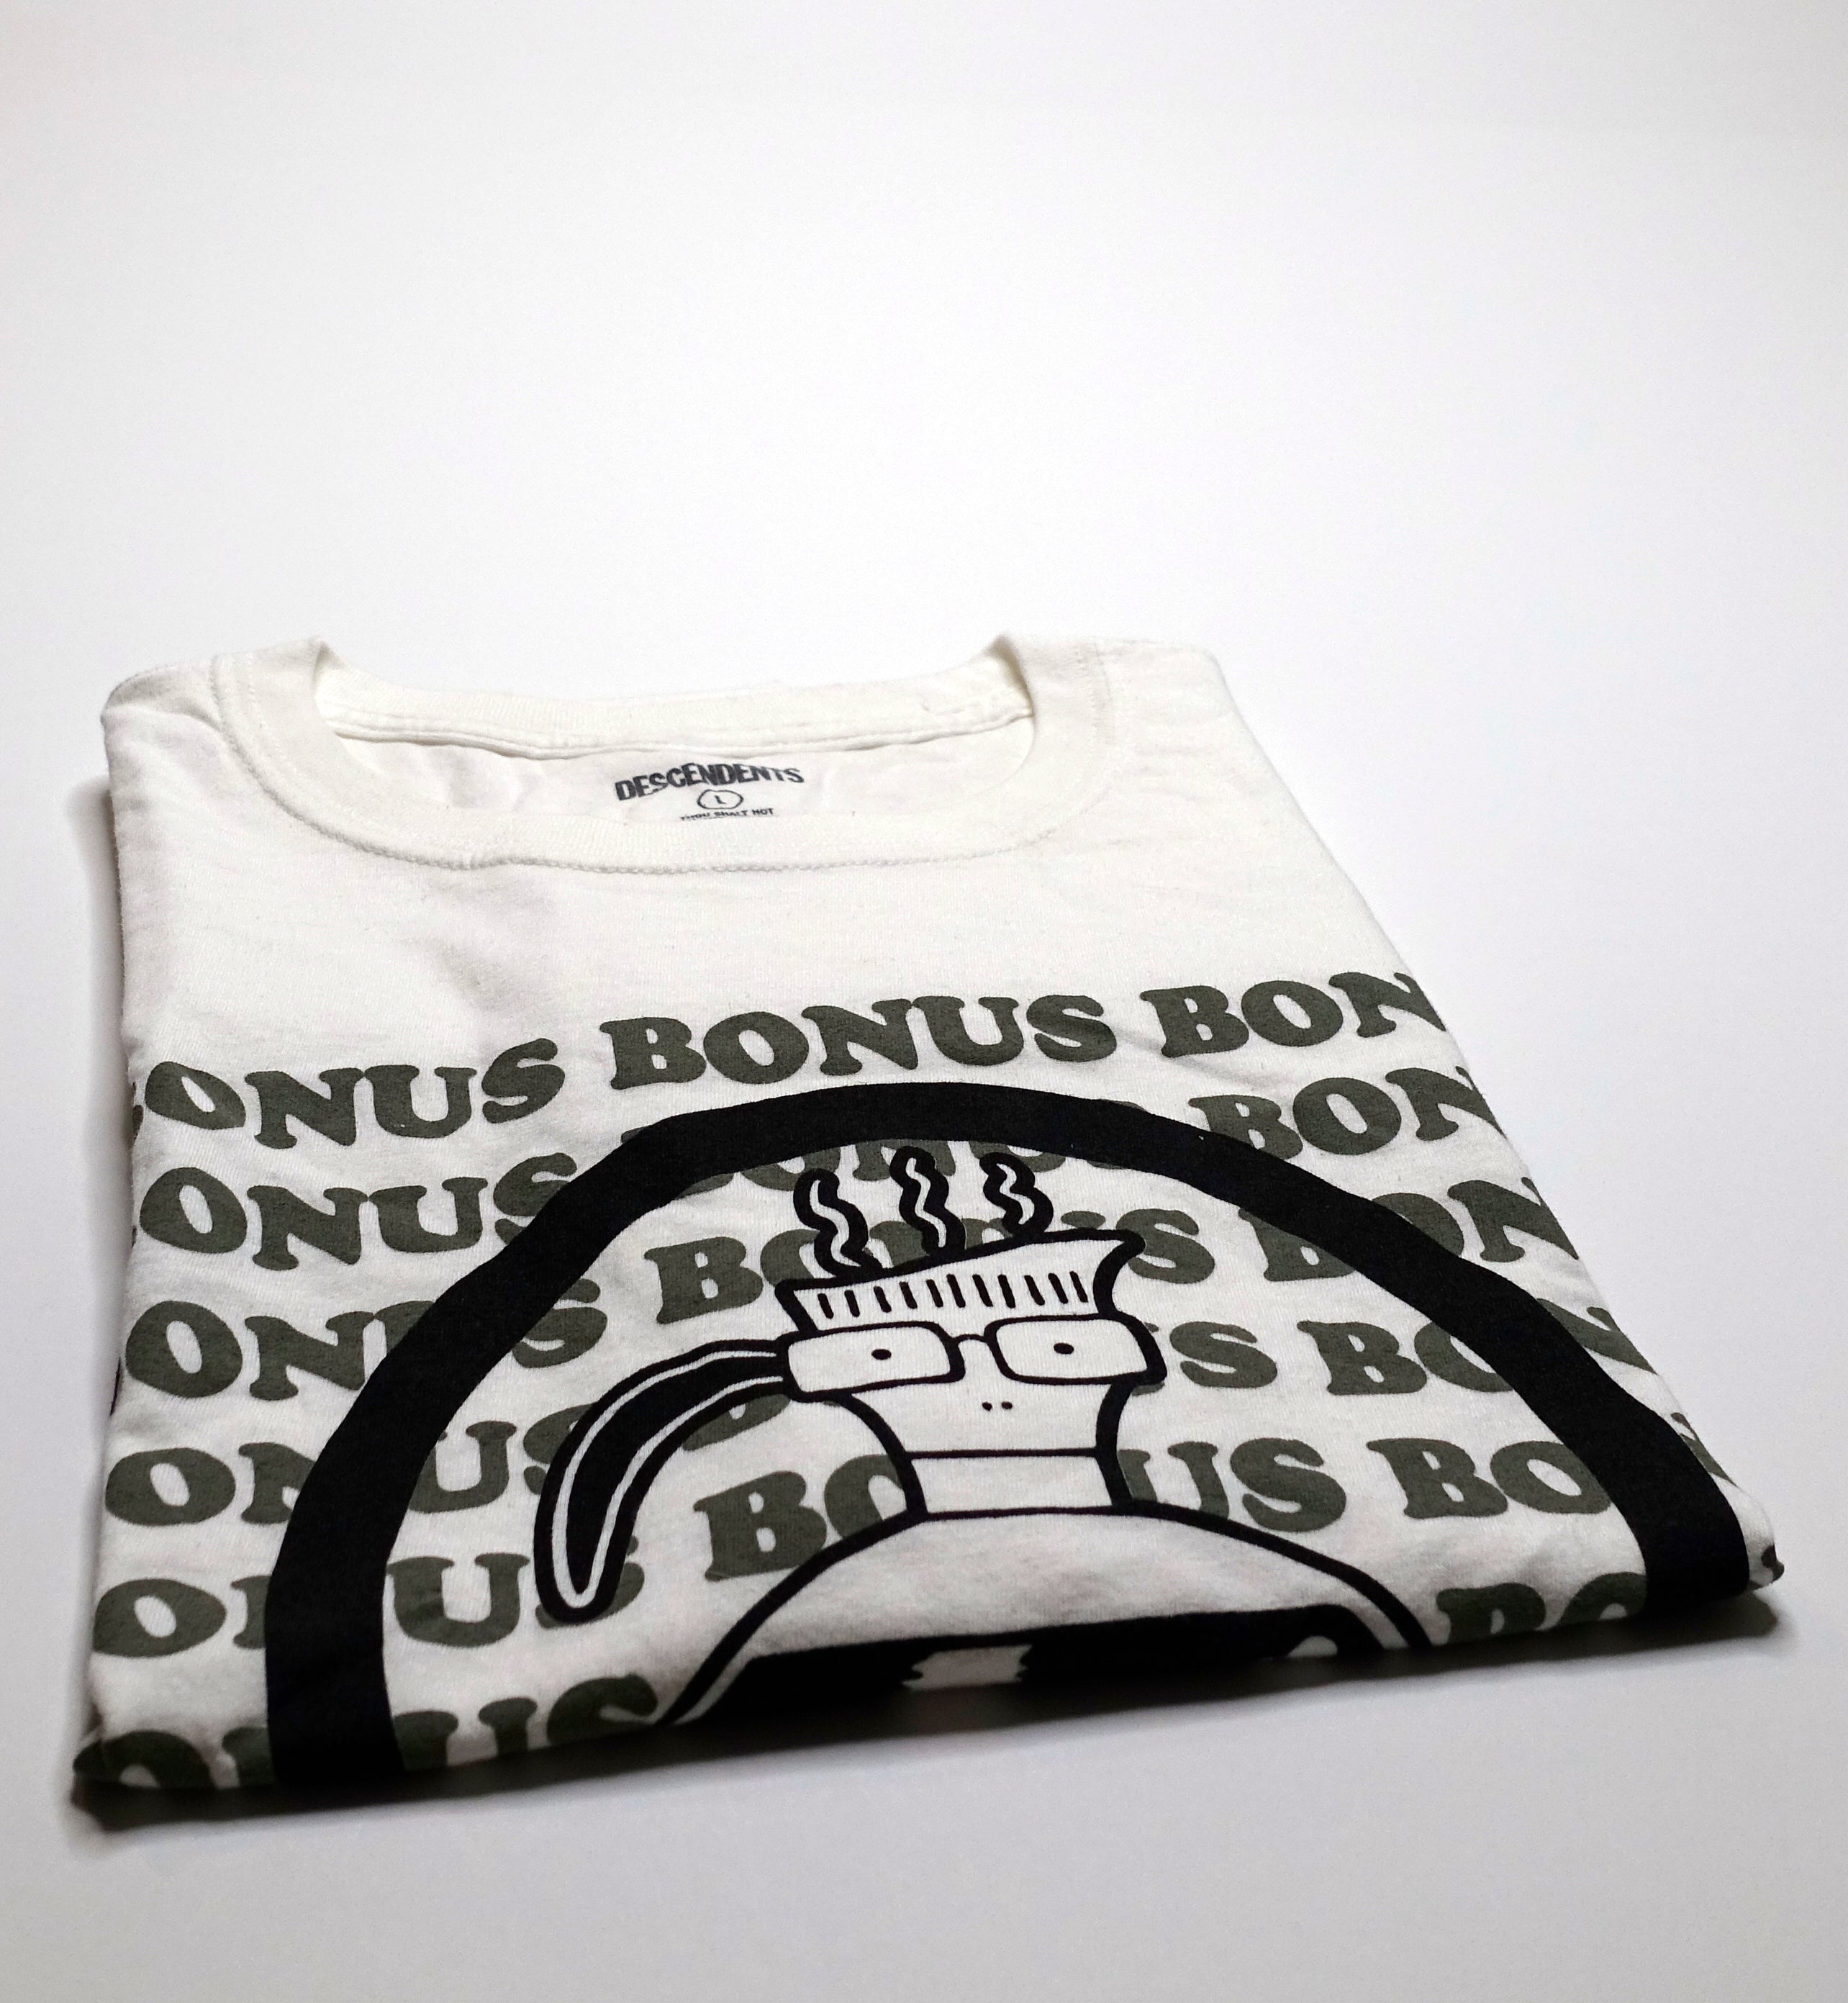 Descendents - Bonus Bonus Cup Shirt Size Large